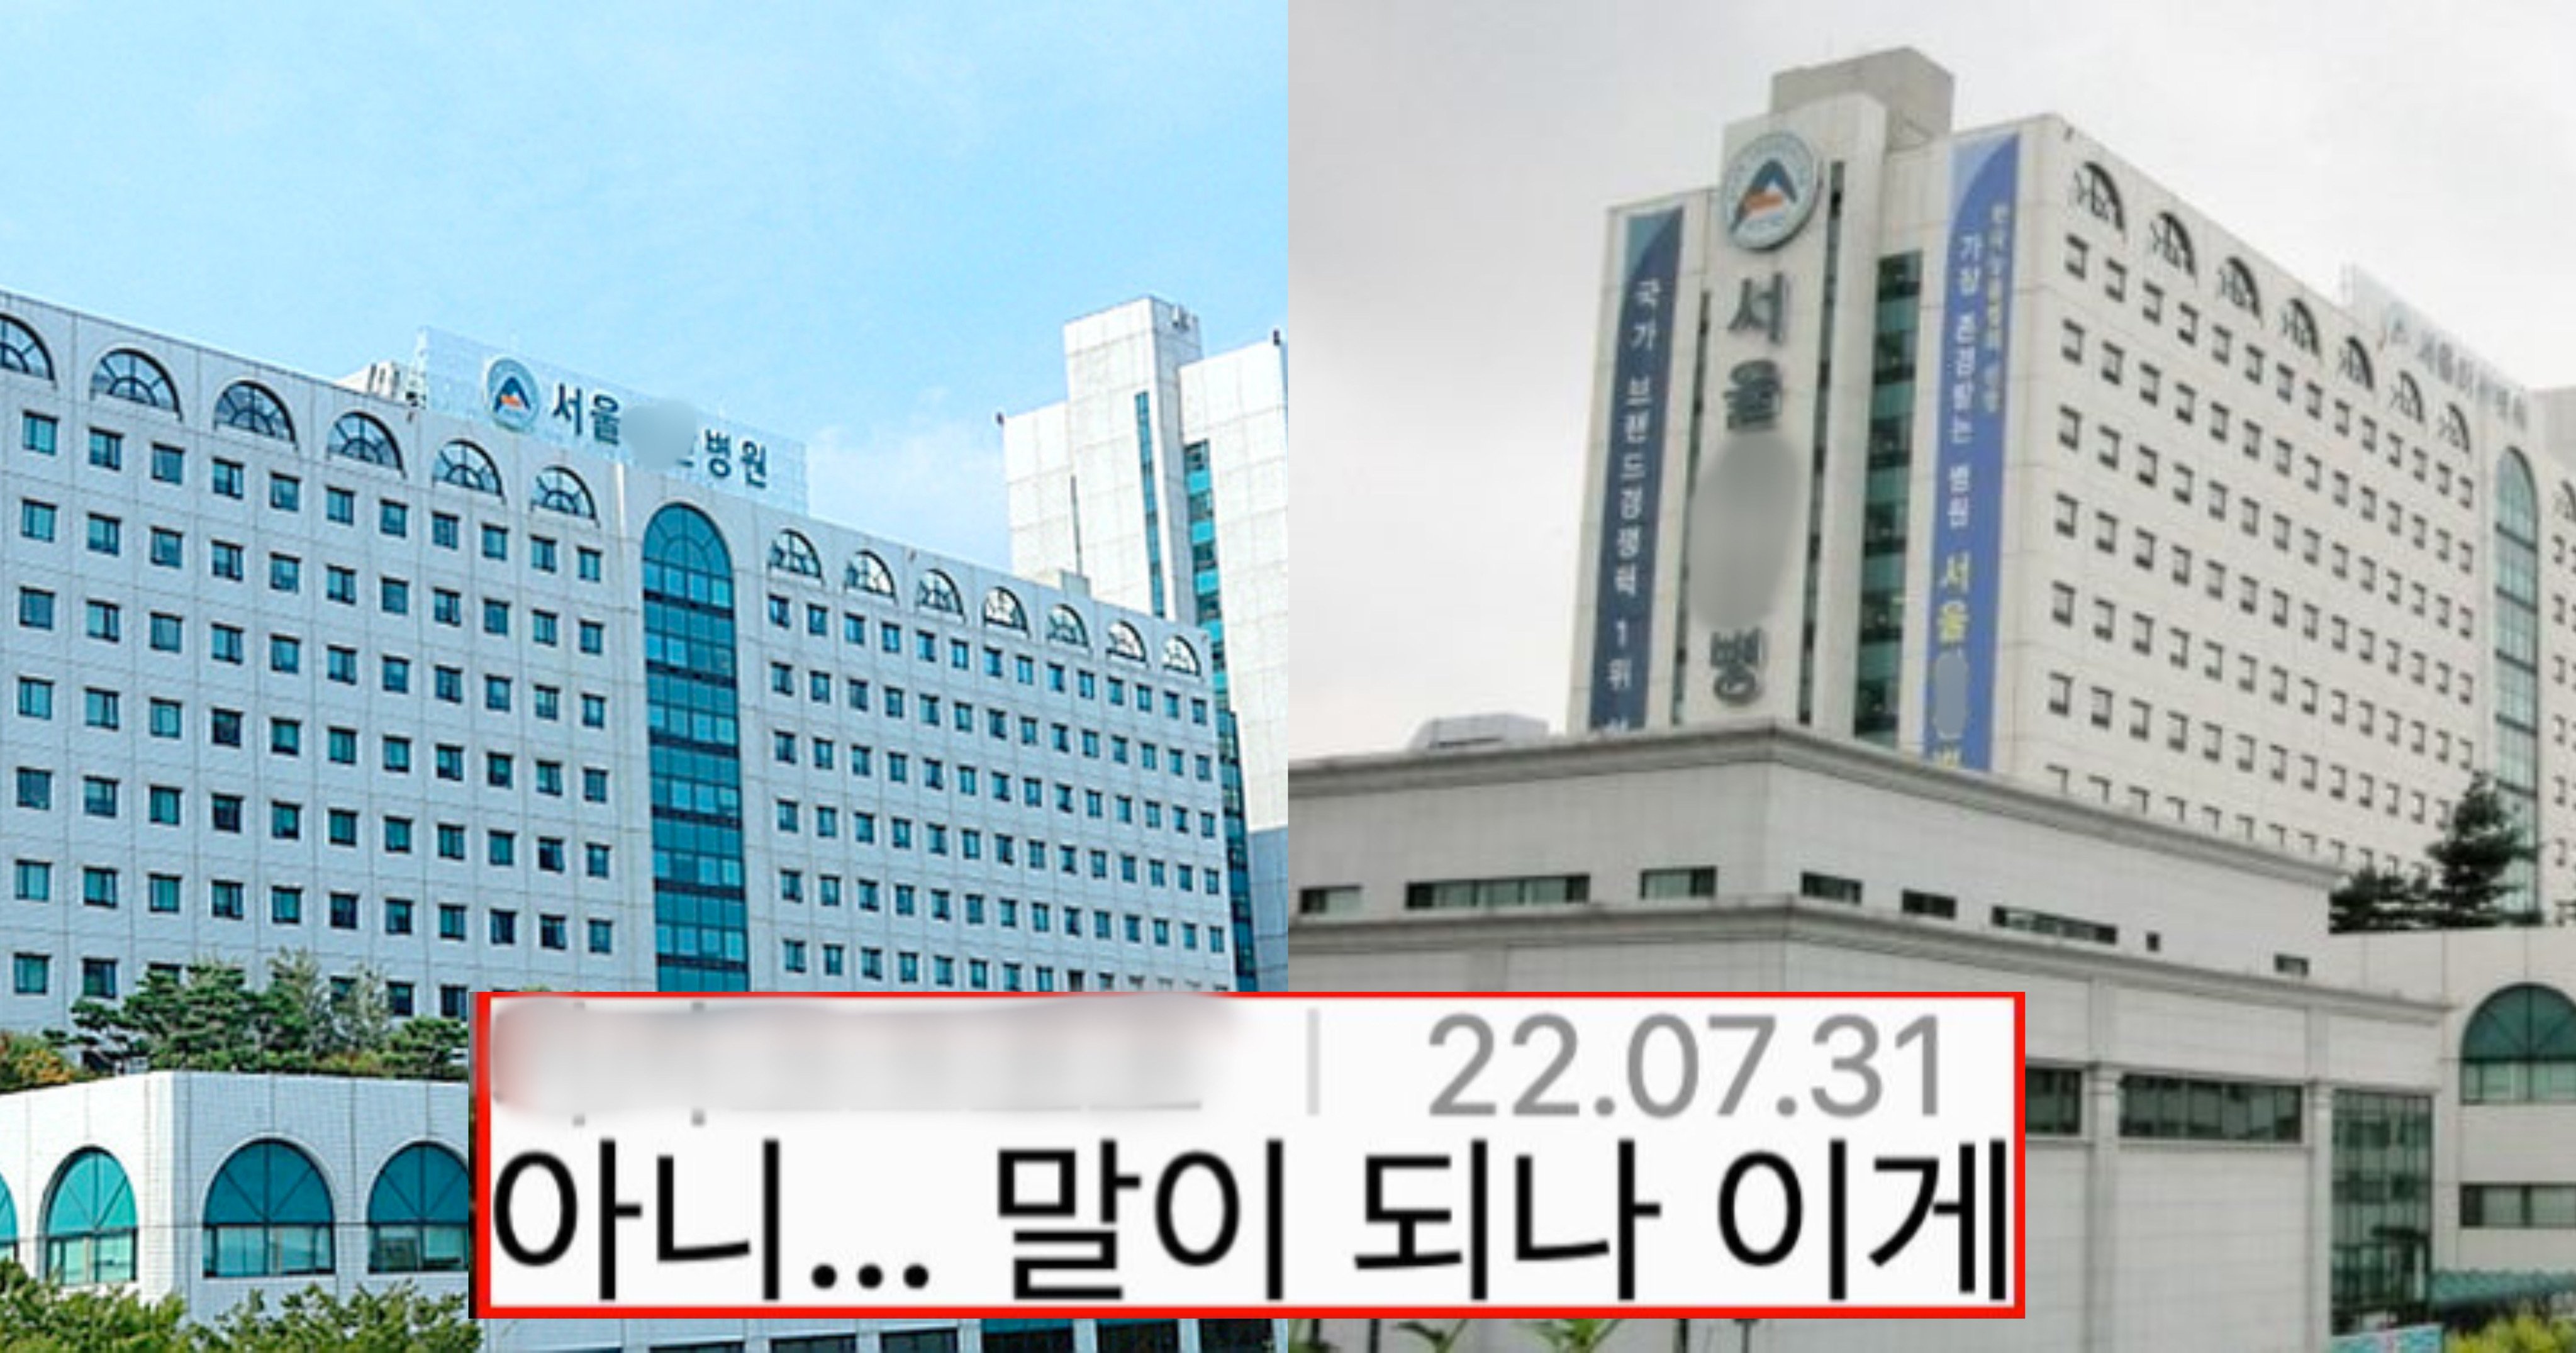 3b977860 0d7b 4bad b5b3 fb184af950f5.jpeg?resize=1200,630 - 이번에 서울 아X병원에서 벌어진 충격적인 사건